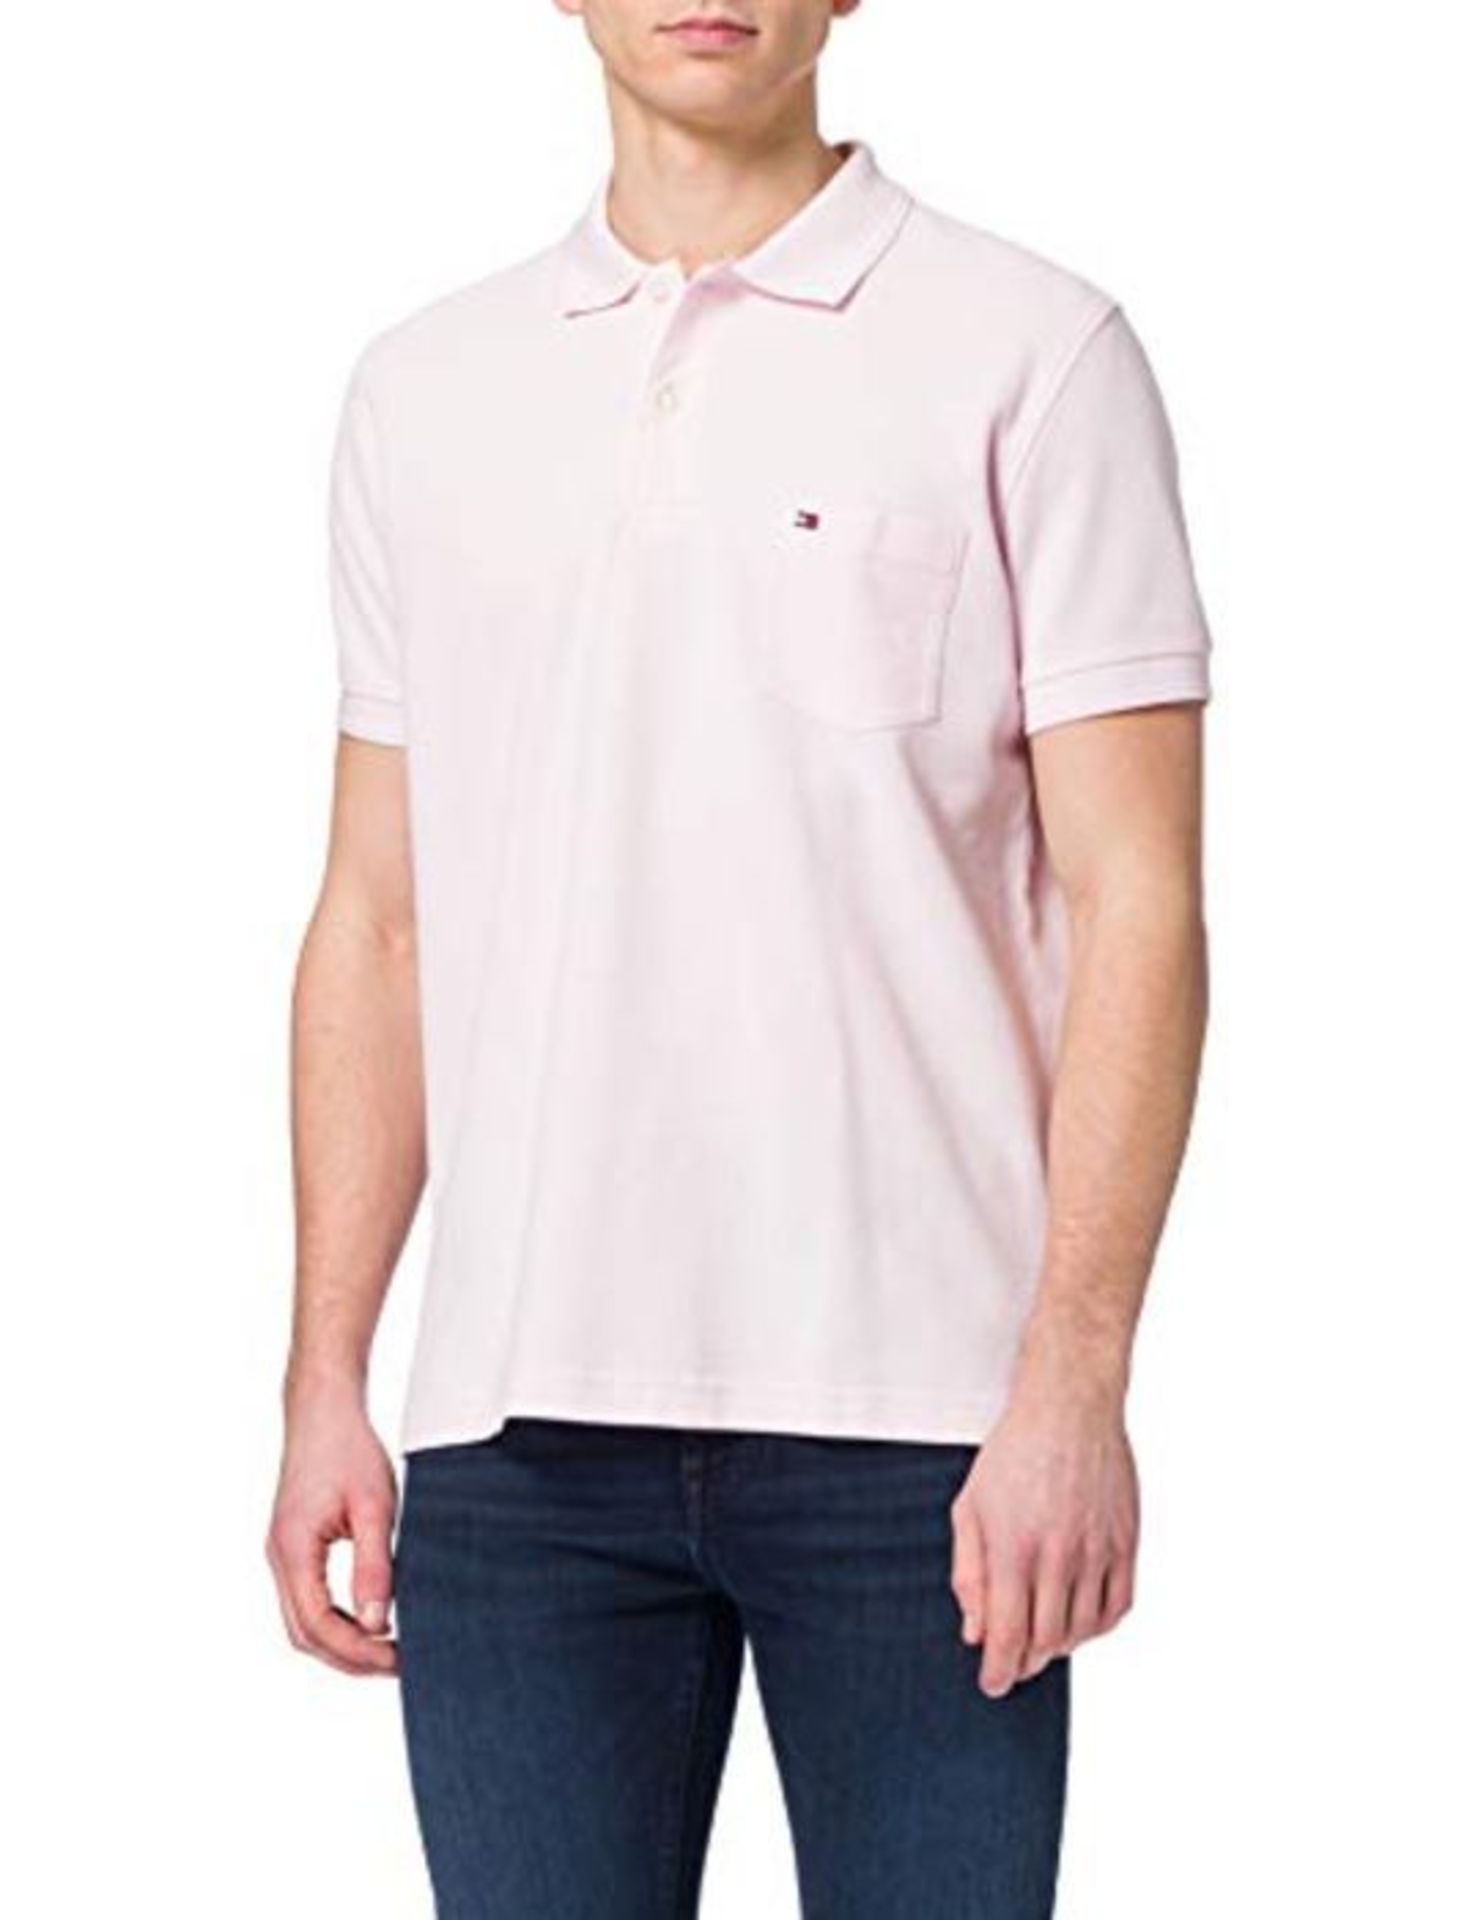 Tommy Hilfiger Men's Structured Pocket Regular Polo Shirt, Light Pink, M